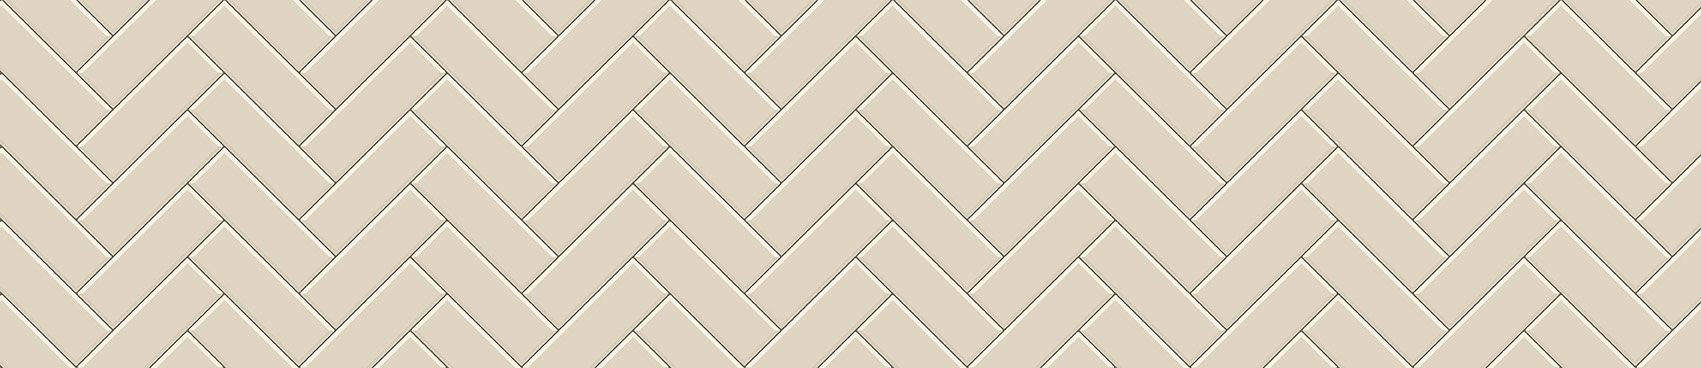 Метро керамик (мокко-лайт) - Фабрика ЭКО